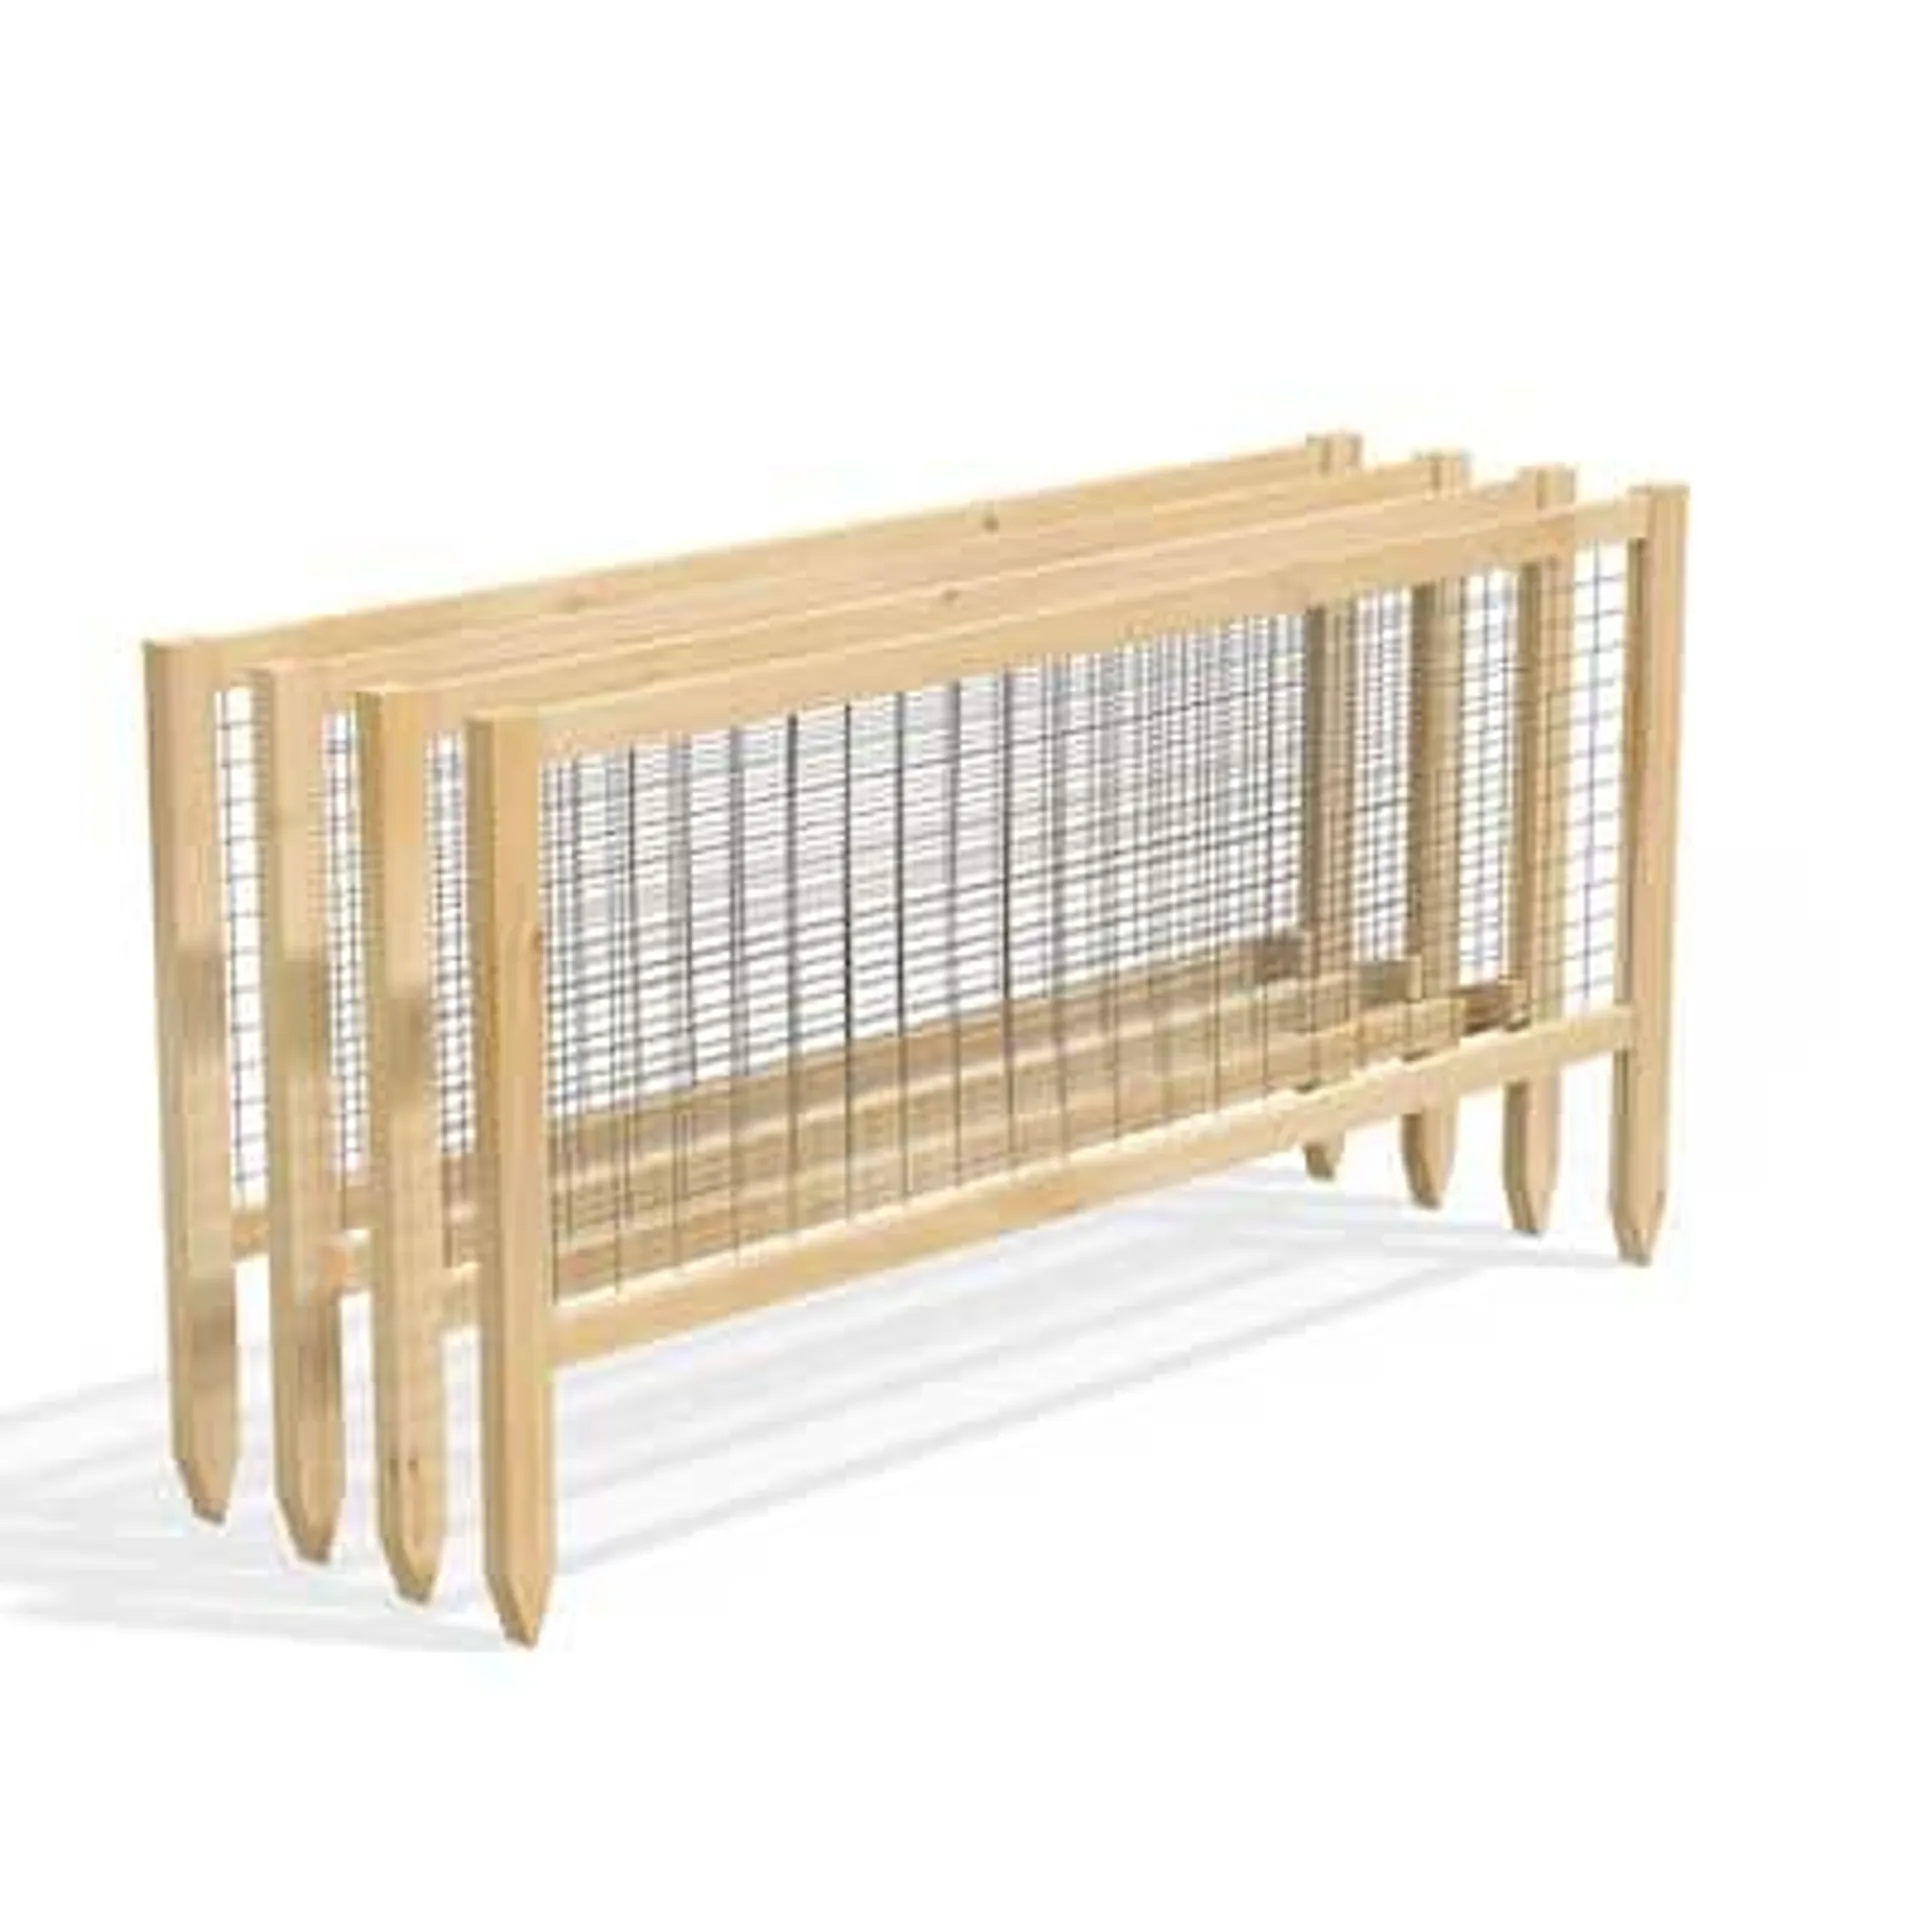 0.75-in x 45-in x 23.5-in 4-Pack Natural Cedar Wood Stainless Steel Cedar Border Fencing